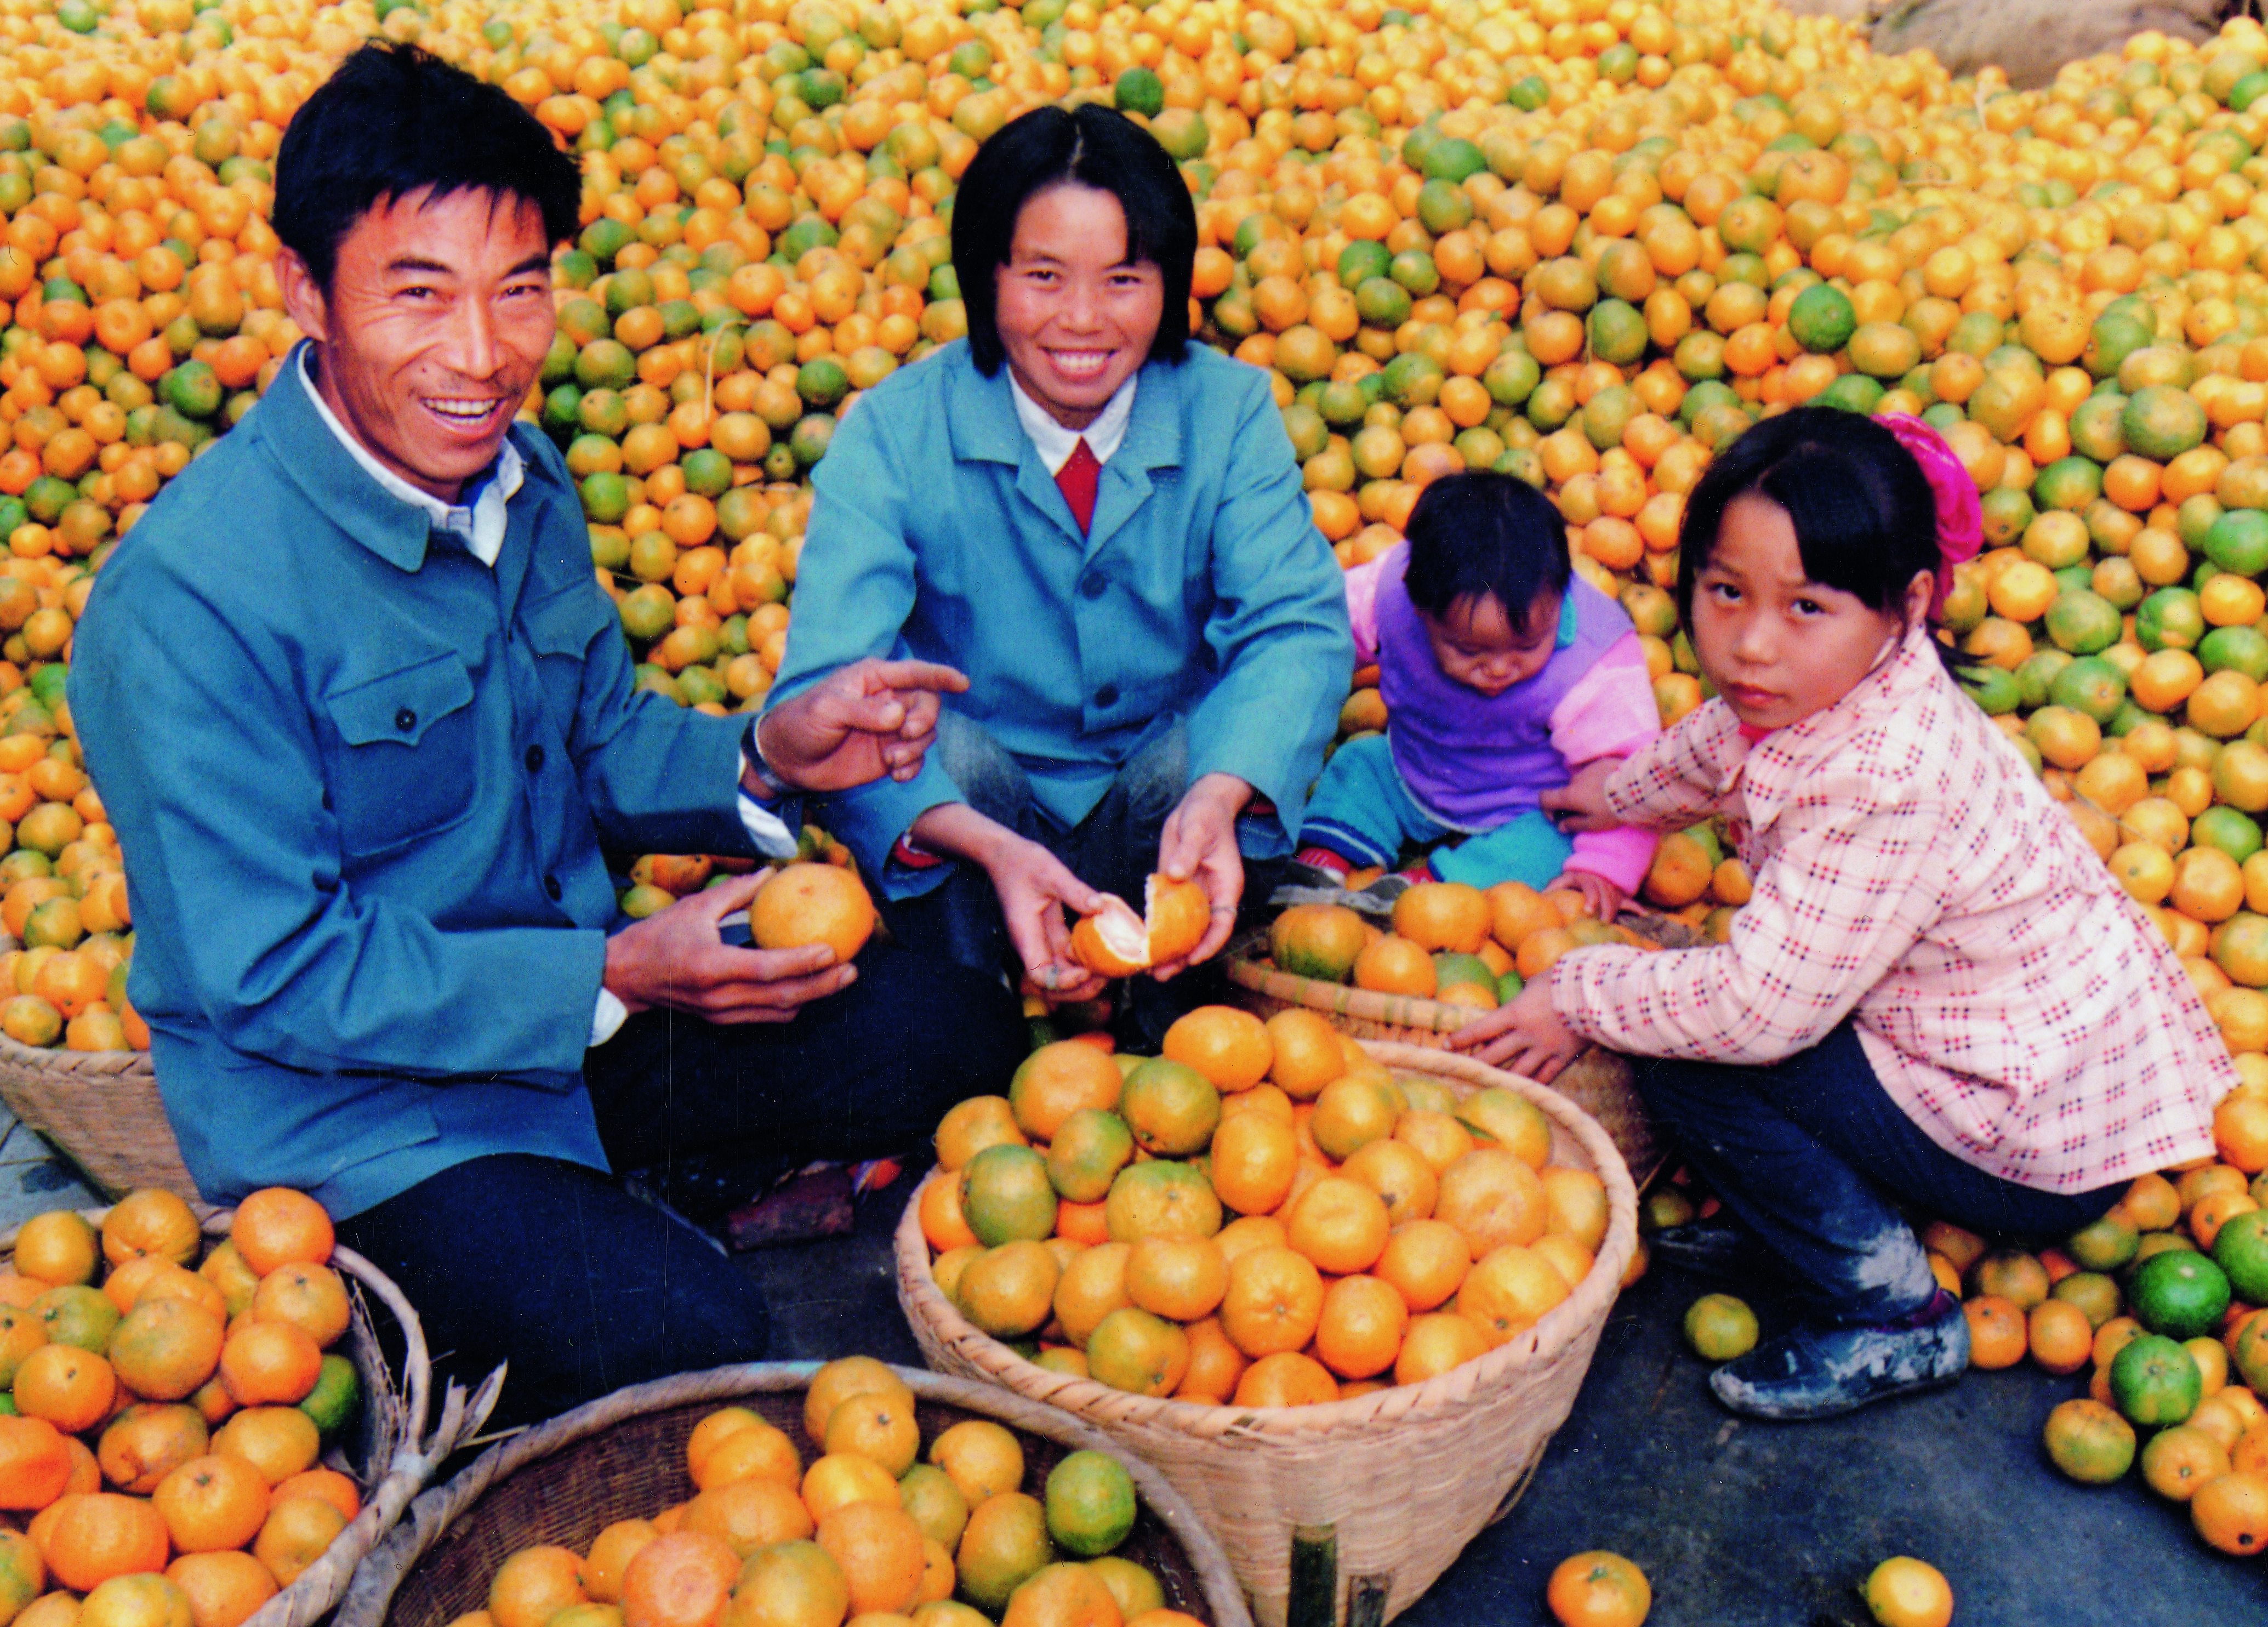 叶兴友和高冬青新婚第一年就种下了六十多棵橘树苗。1988年，他们家早橘大丰收，一家人喜上眉梢。（摄于1988年）_副本.jpg